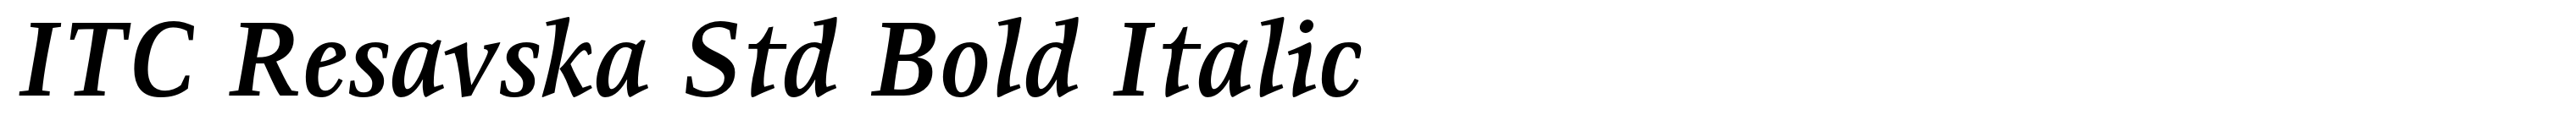 ITC Resavska Std Bold Italic